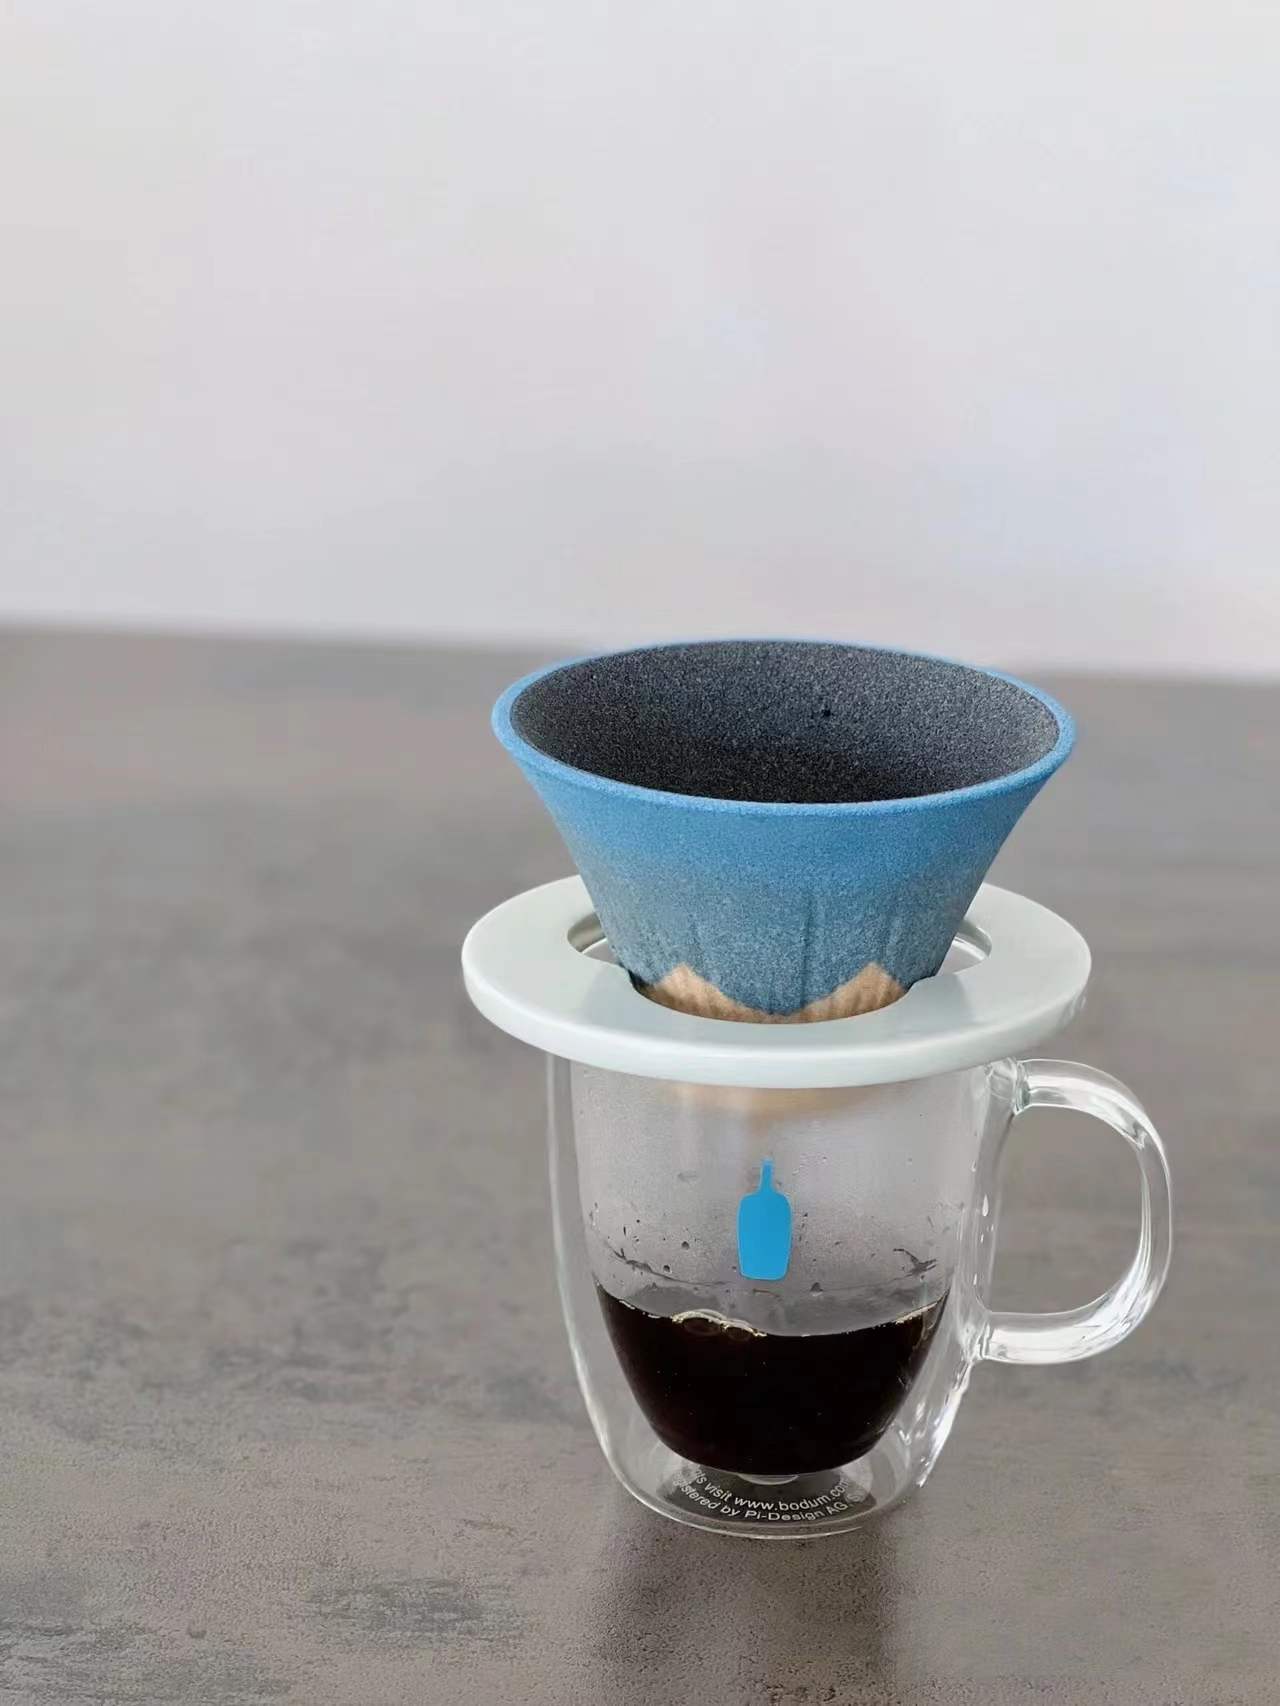 富士山 環保咖啡濾杯 三色 | 波佐見燒